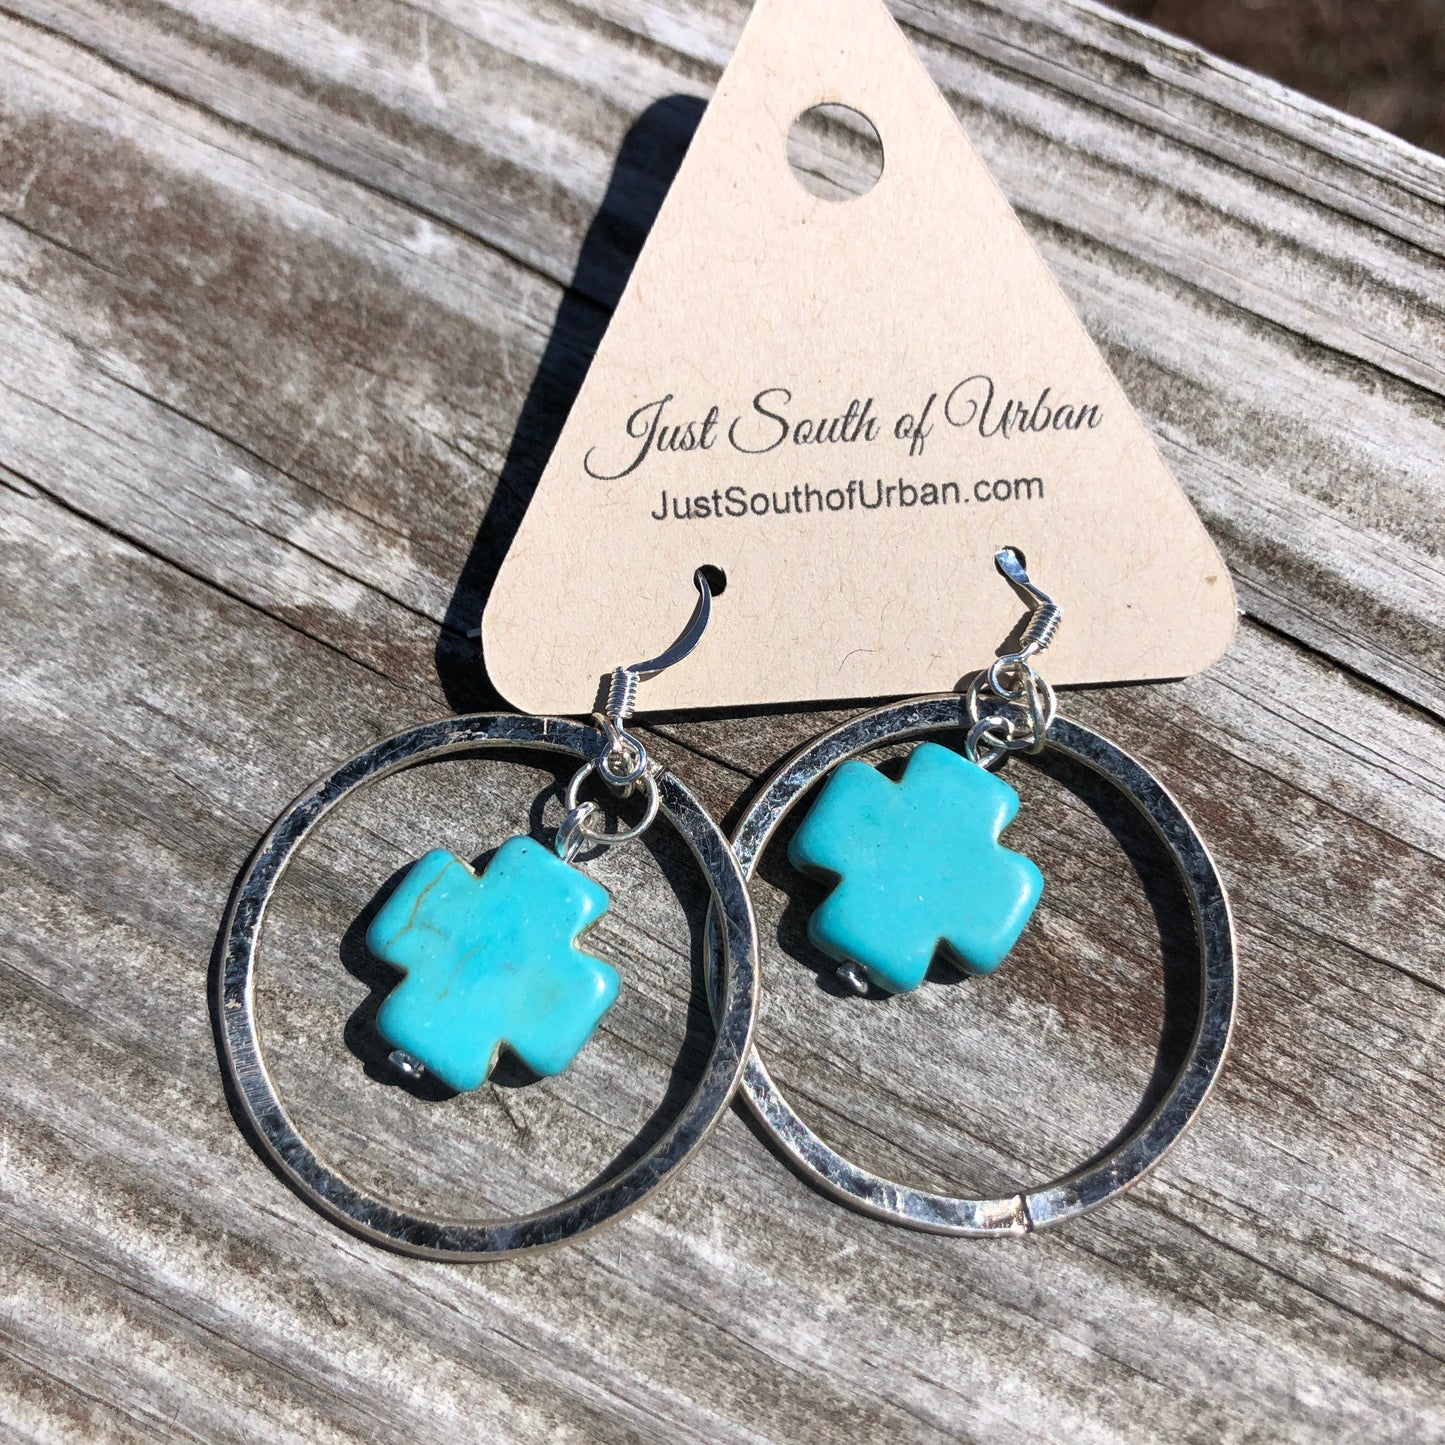 Turquoise Magnesite Cross Hoop Earrings 2" x 1.25"